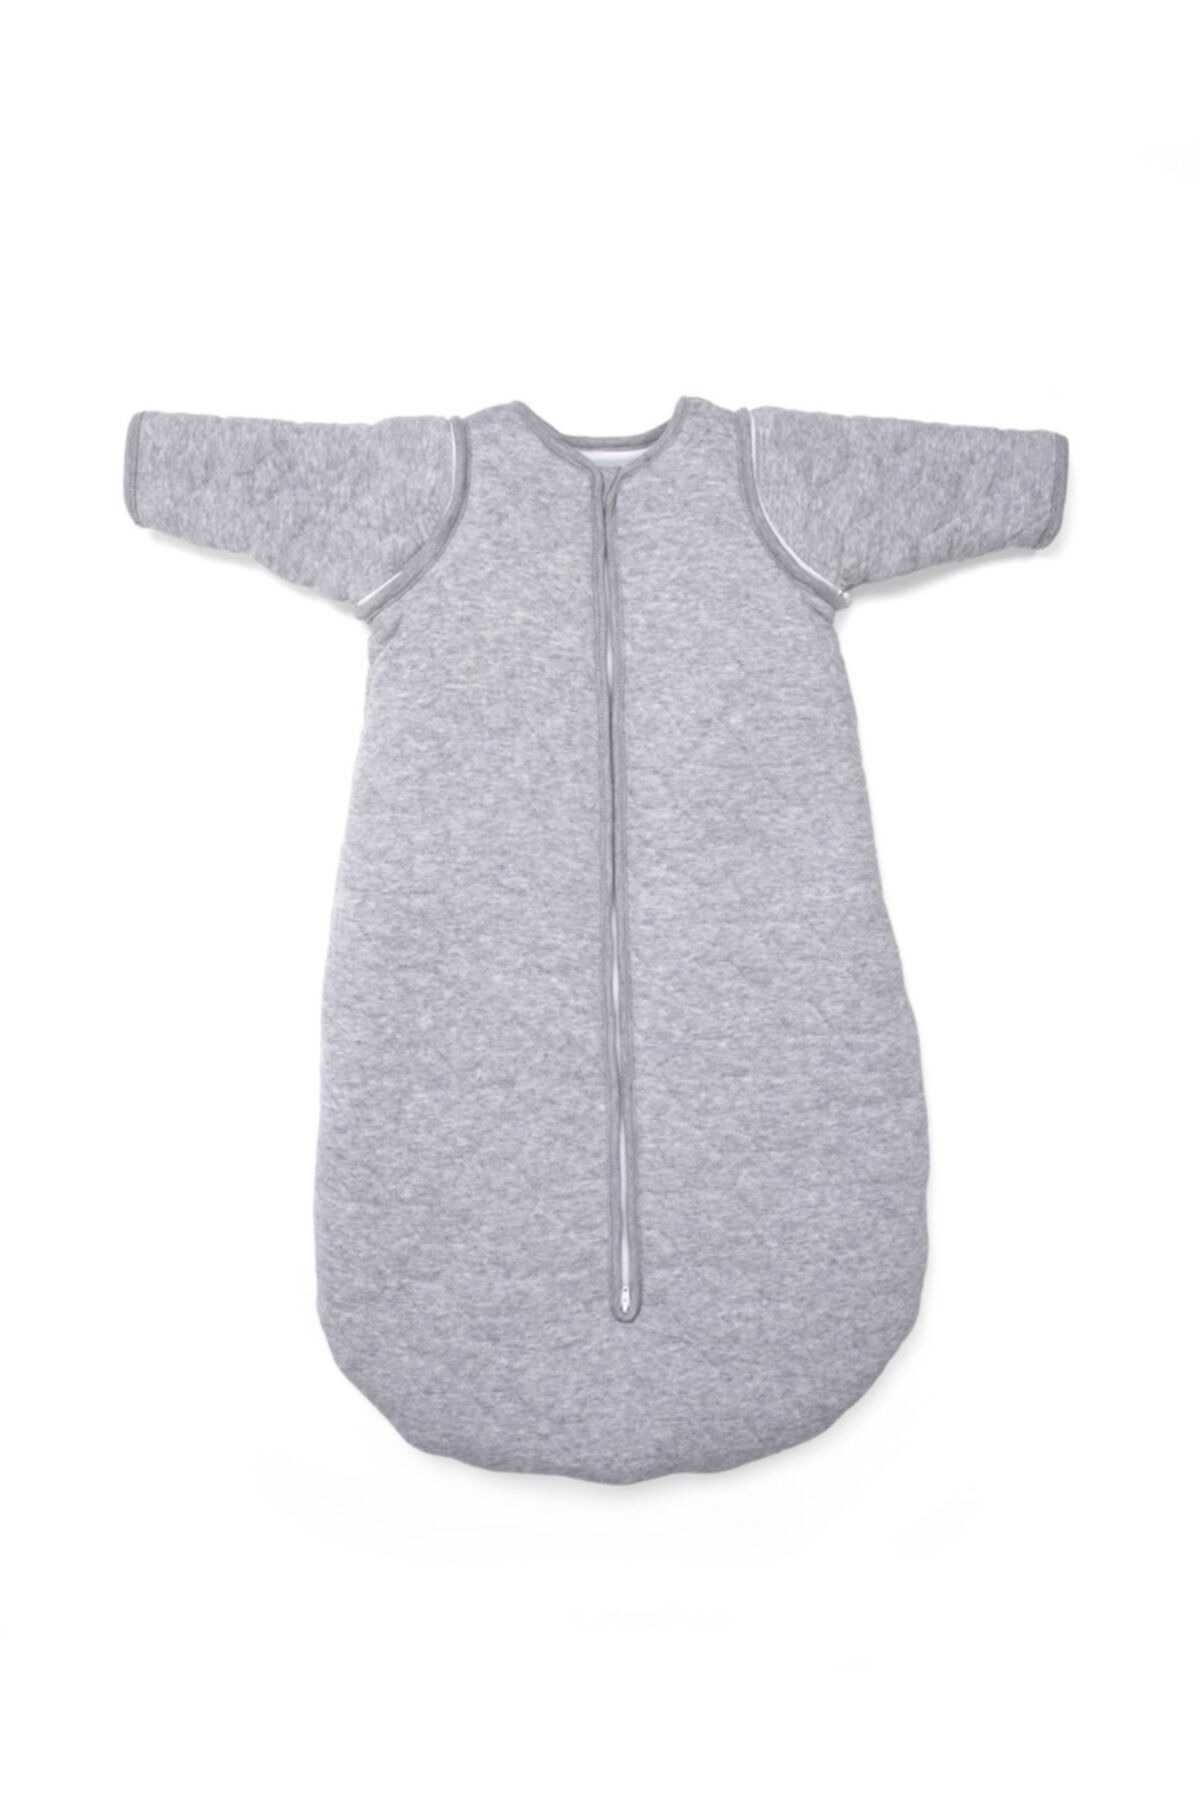 POETREE KIDS Star Grey Melange Çıkarılabilir Kollu Bebek Uyku Tulumu Kışlık 4 Tog 70 Cm